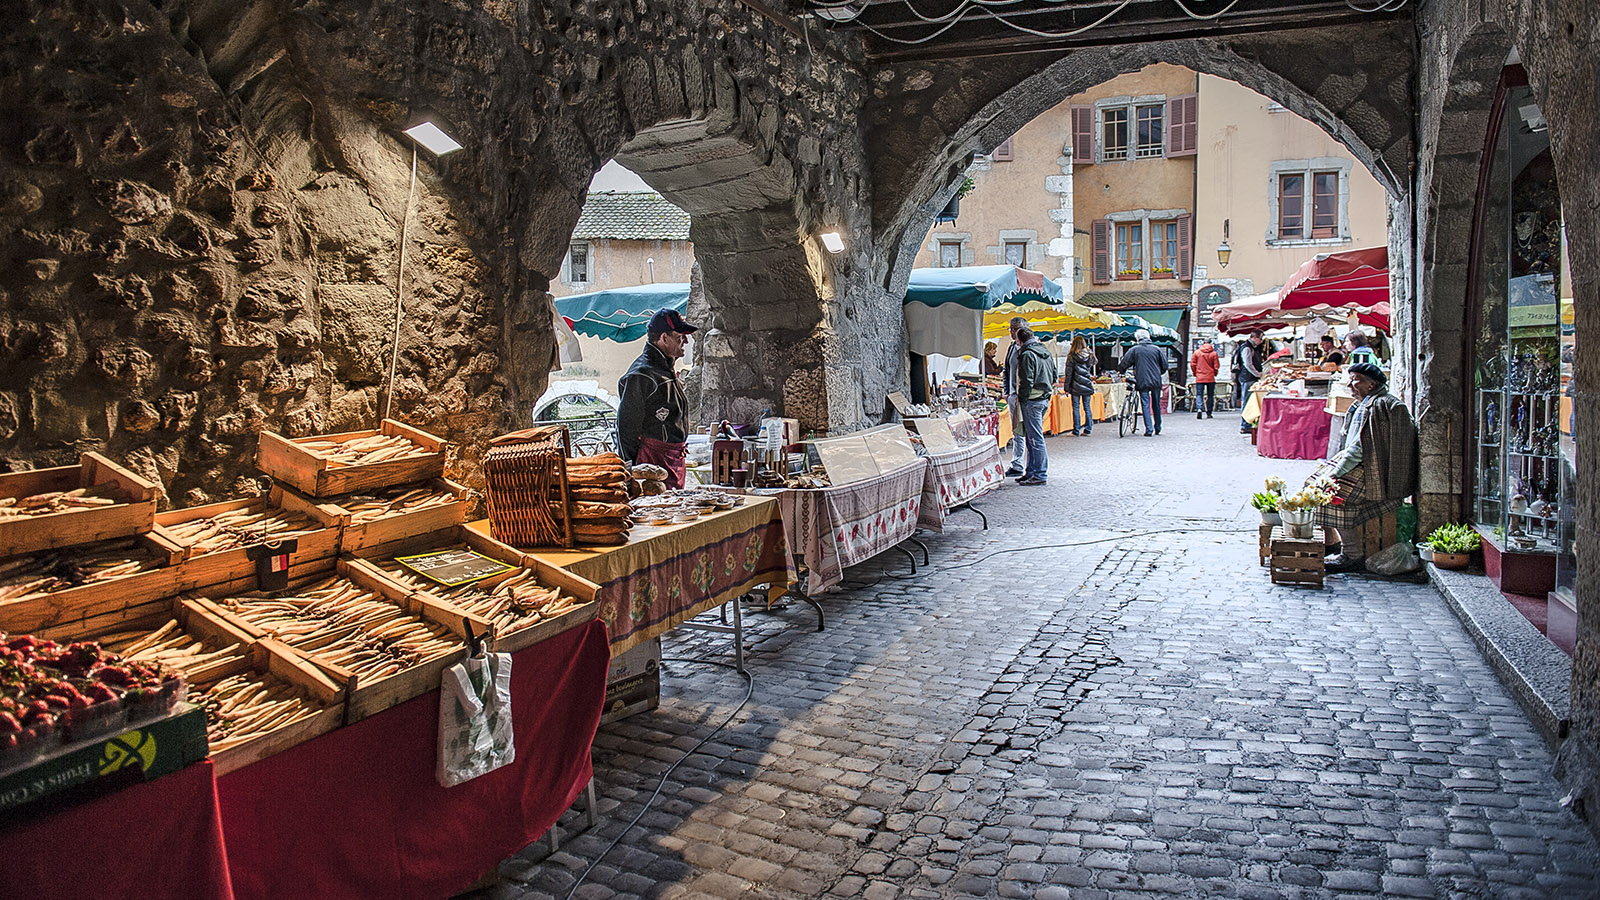 Jeden Sonntag ist Markt in der Altstadt von Annecy. Foto: Hilke Maunder